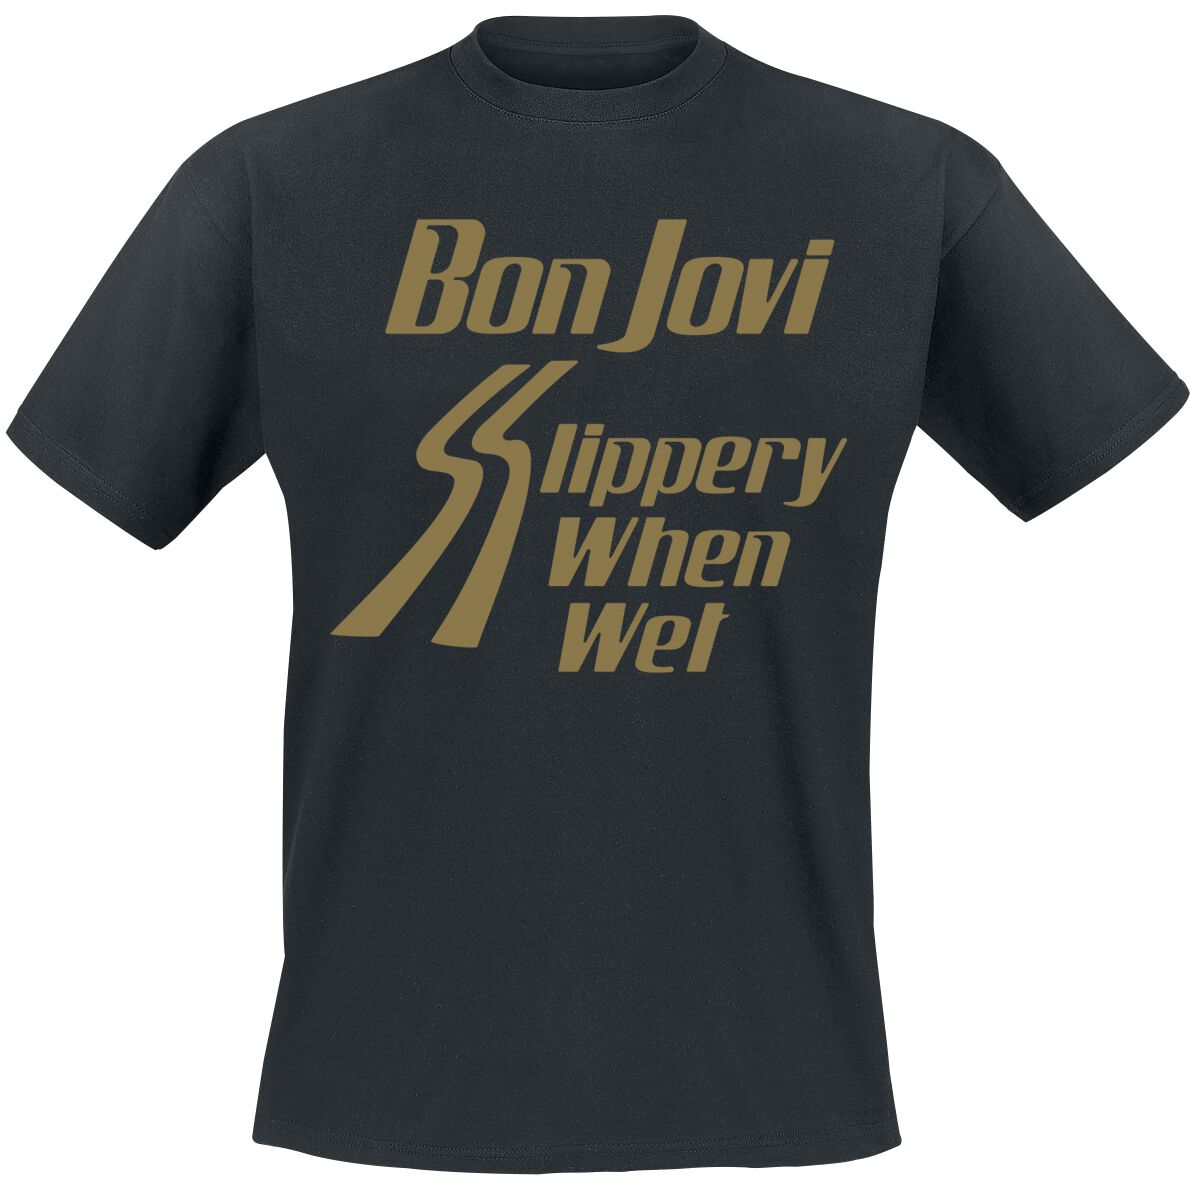 bon jovi t-shirt - slippery when wet - s bis 3xl - fÃ¼r mÃ¤nner - grÃ¶ÃŸe xxl - - lizenziertes merchandise! schwarz